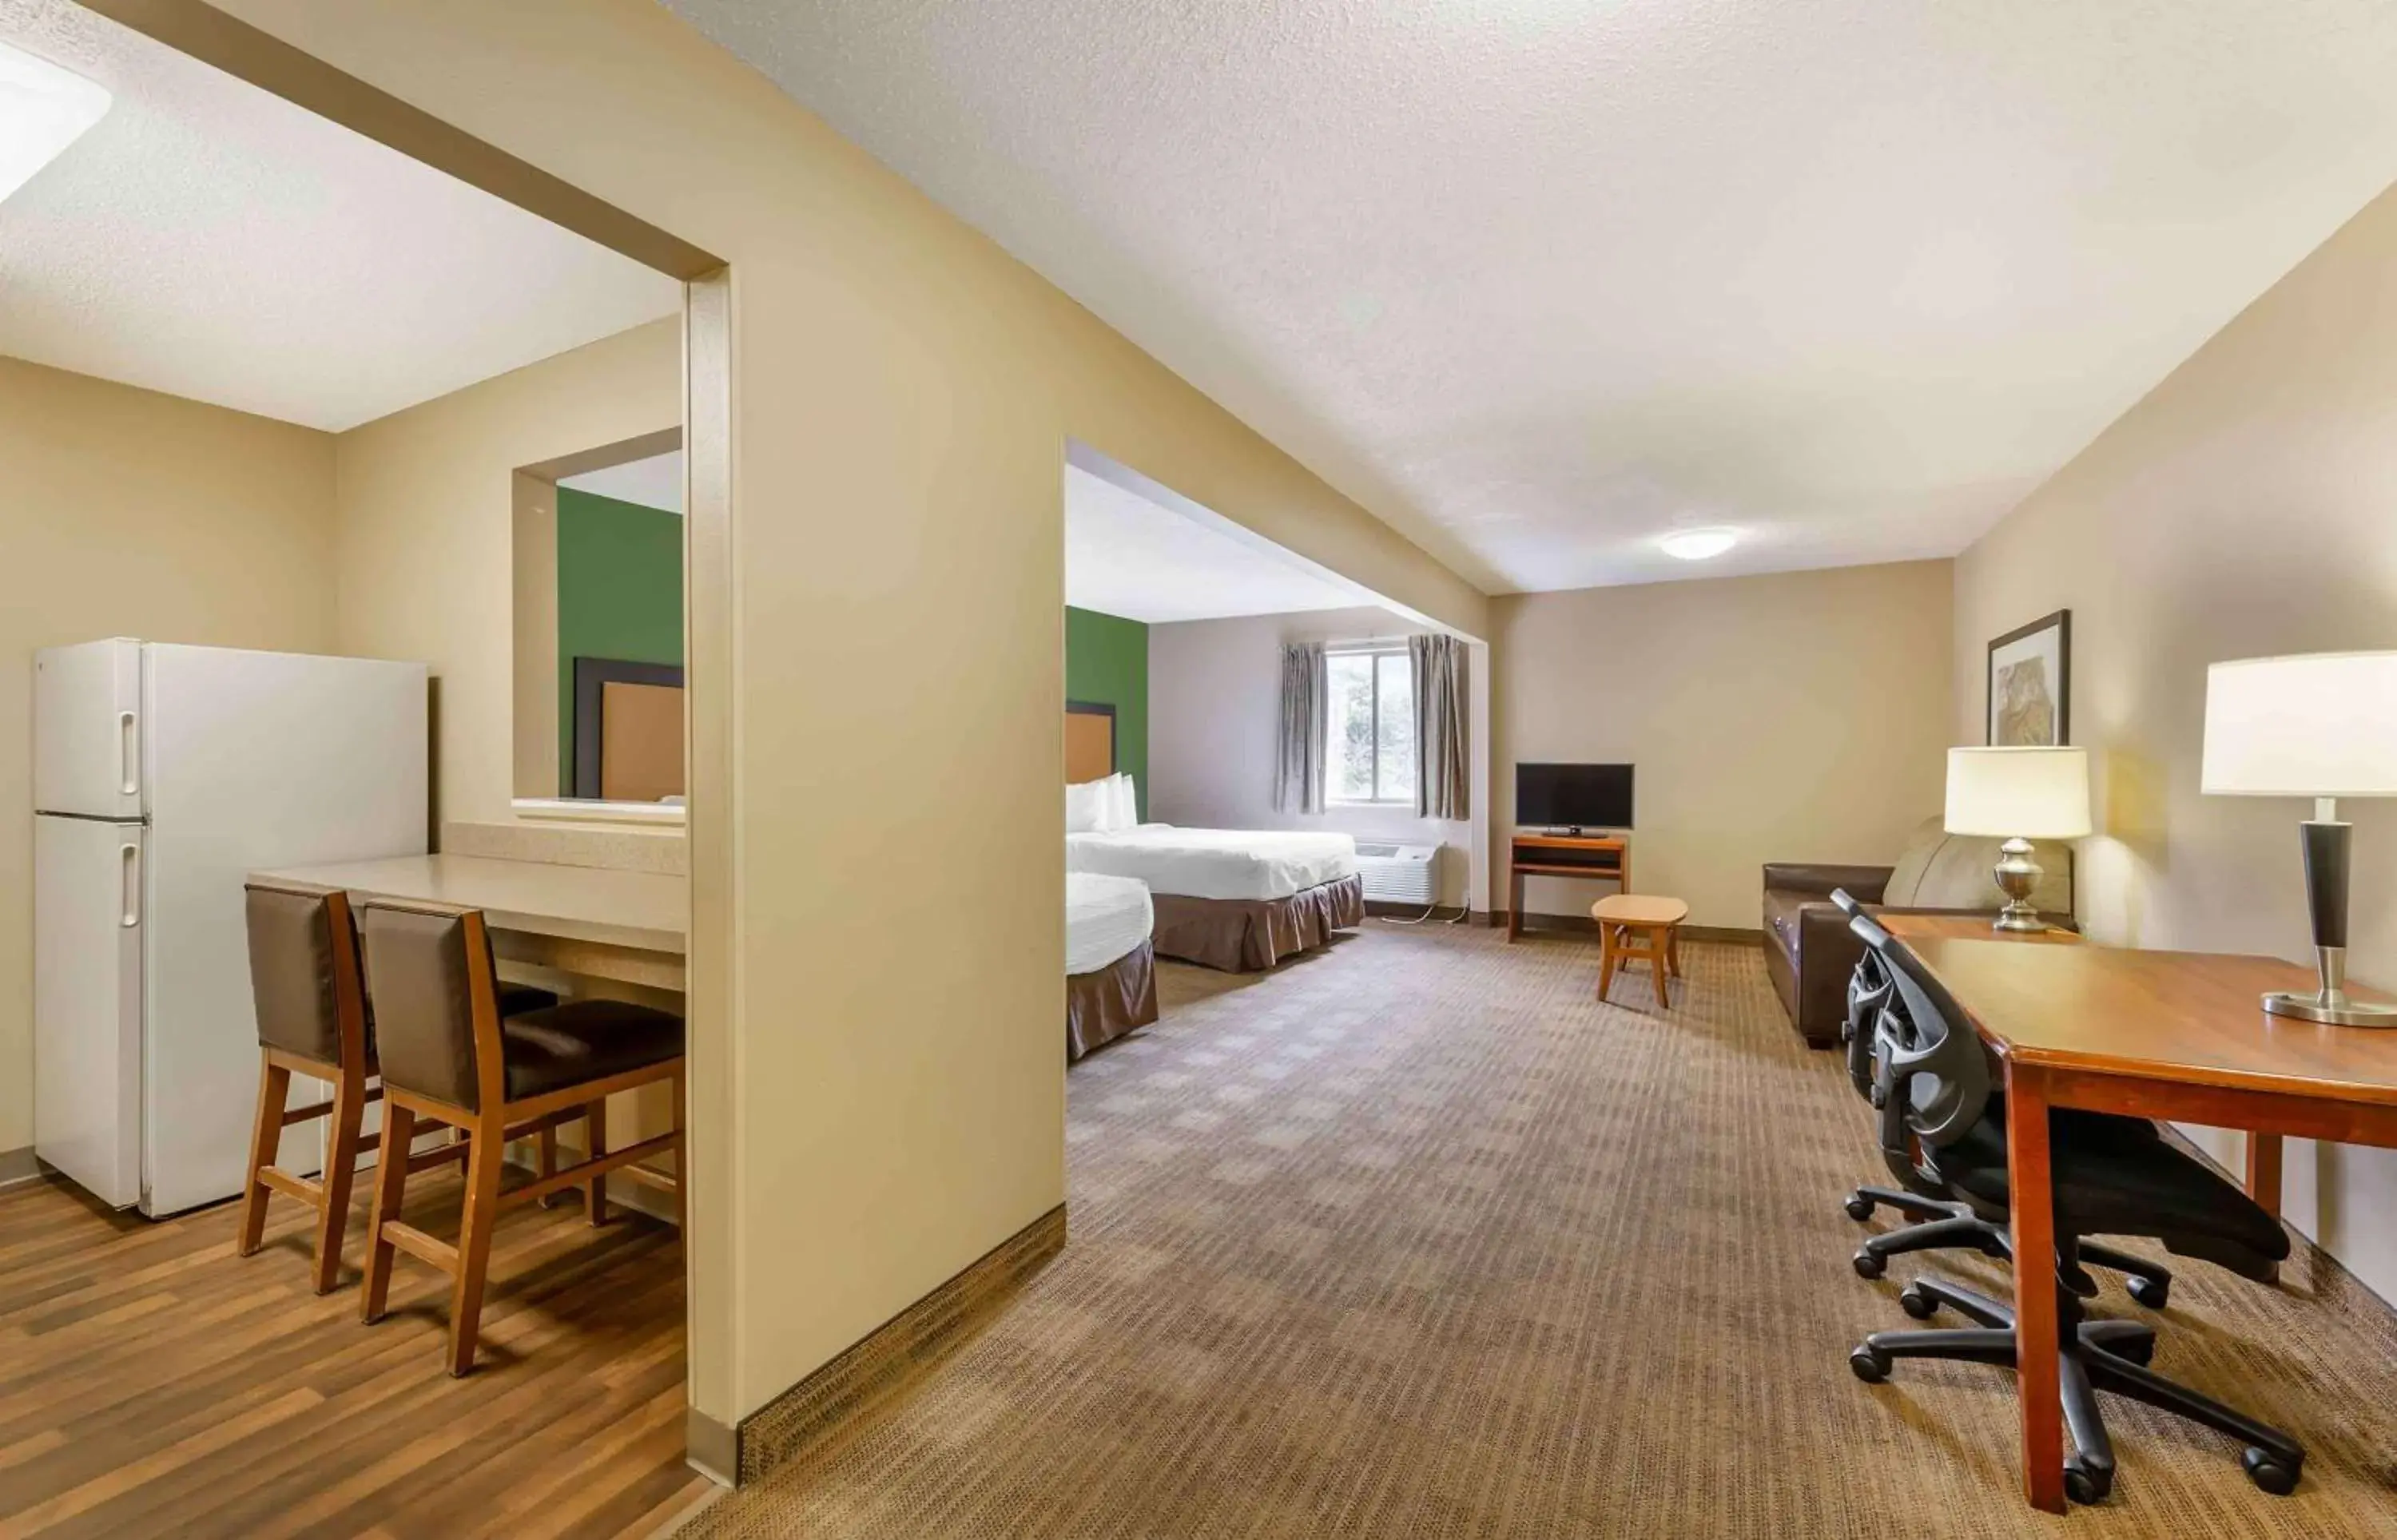 Bedroom, Dining Area in Extended Stay America Suites - Cincinnati - Blue Ash - Reagan Hwy